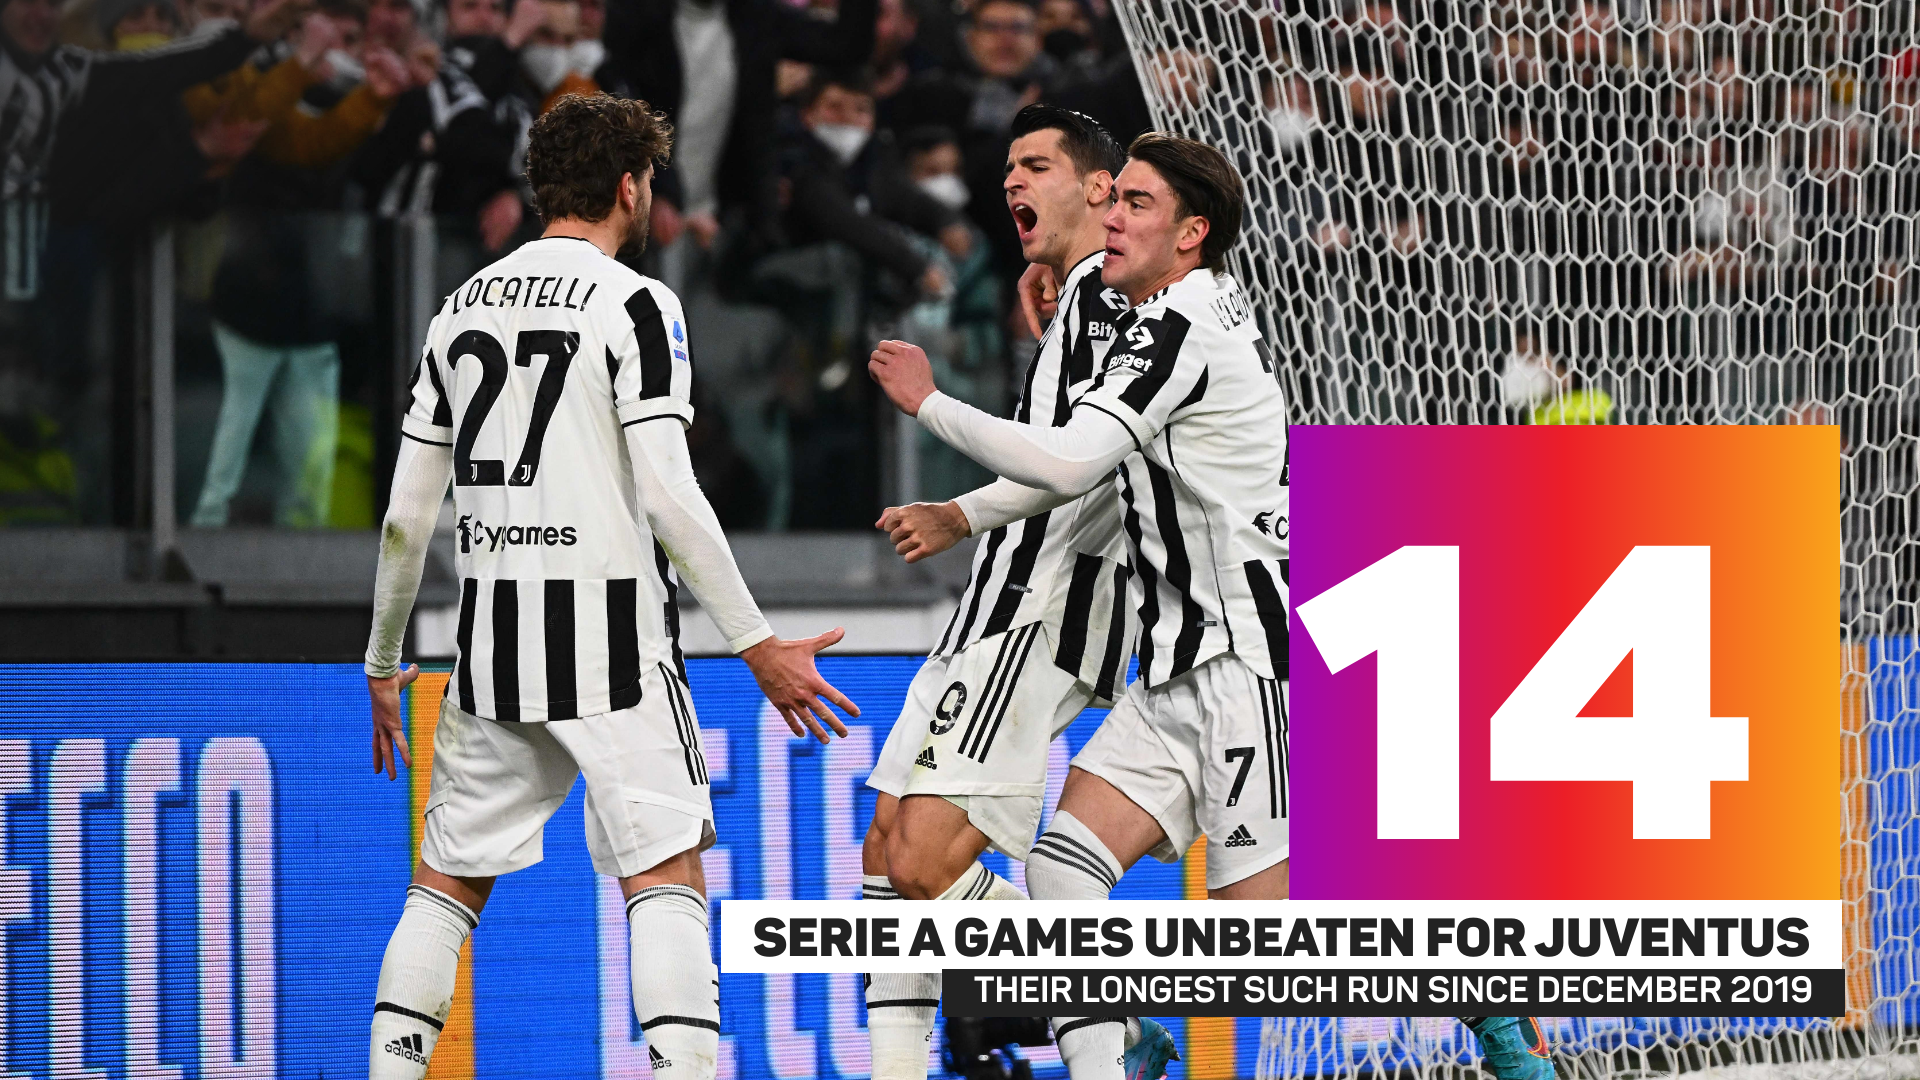 Juventus' unbeaten run